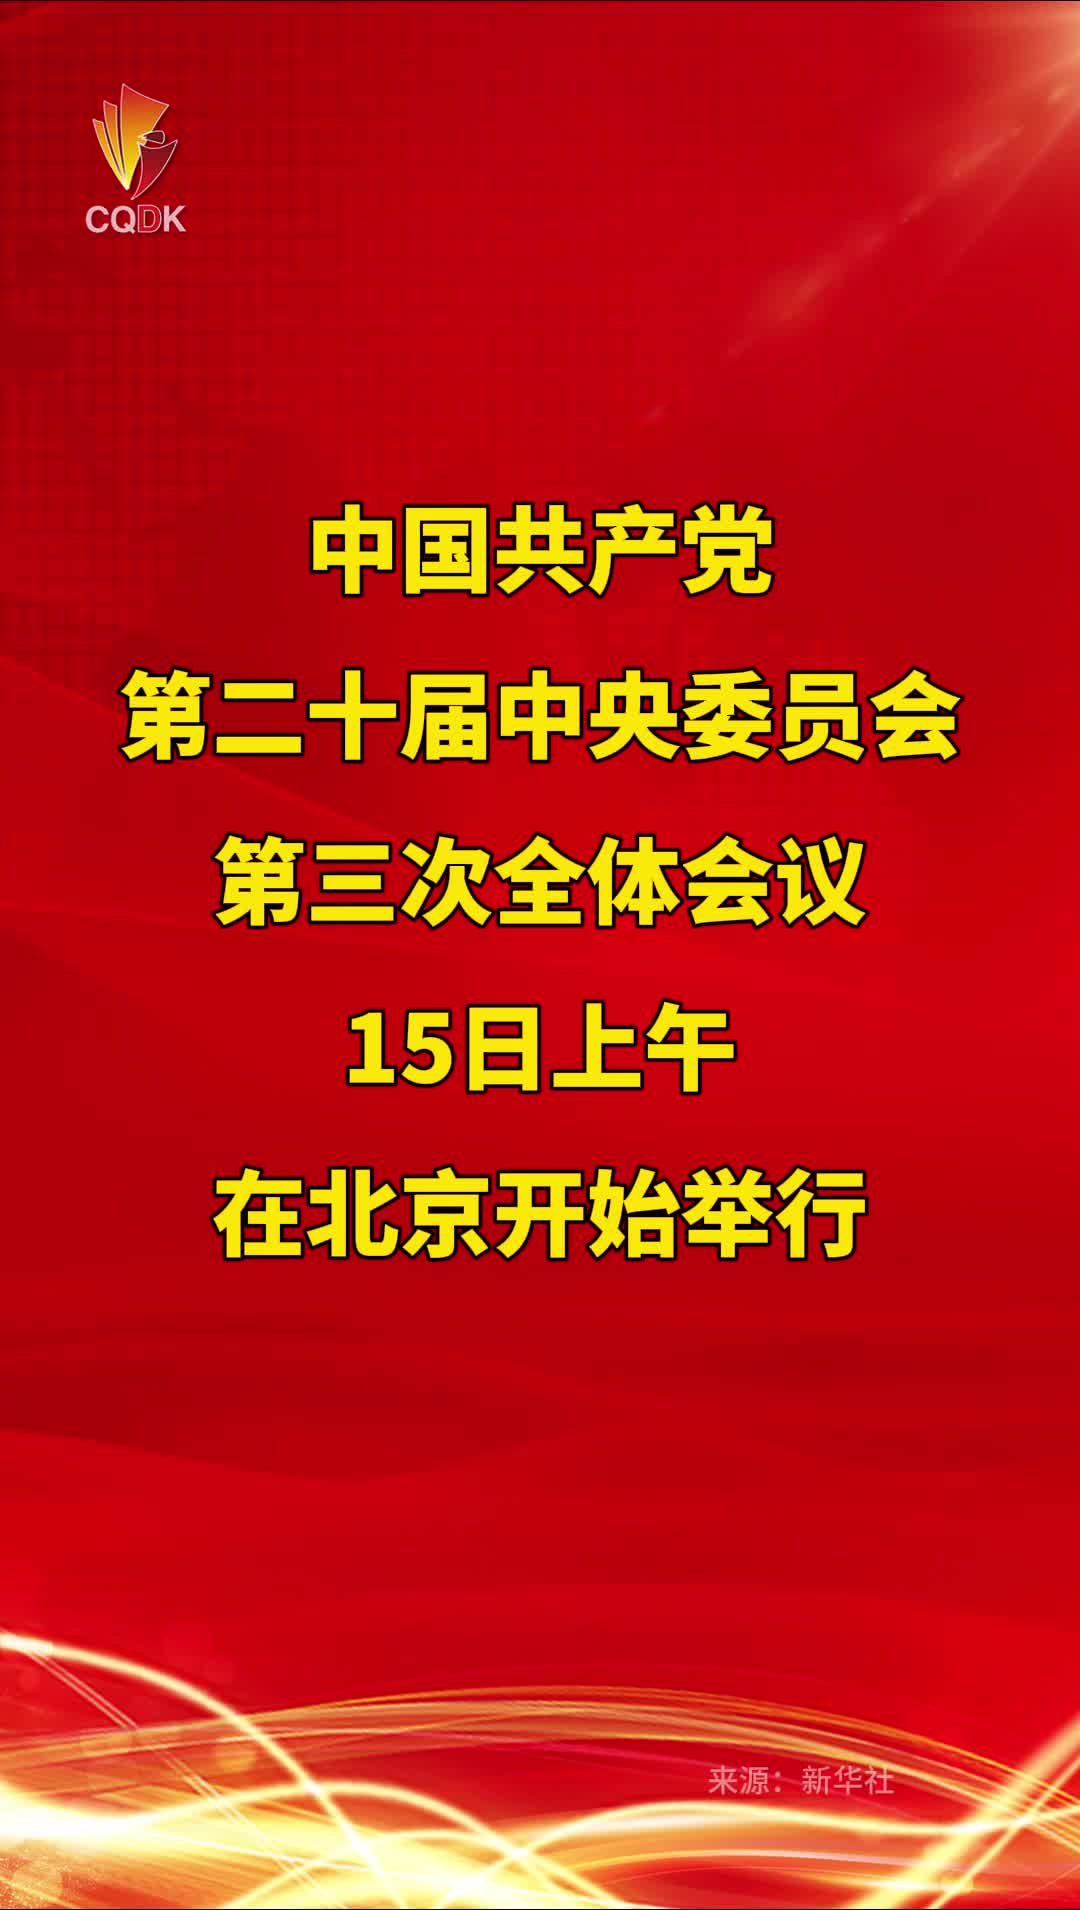 中国共产党第二十届中央委员会第三次全体会议在北京开始举行